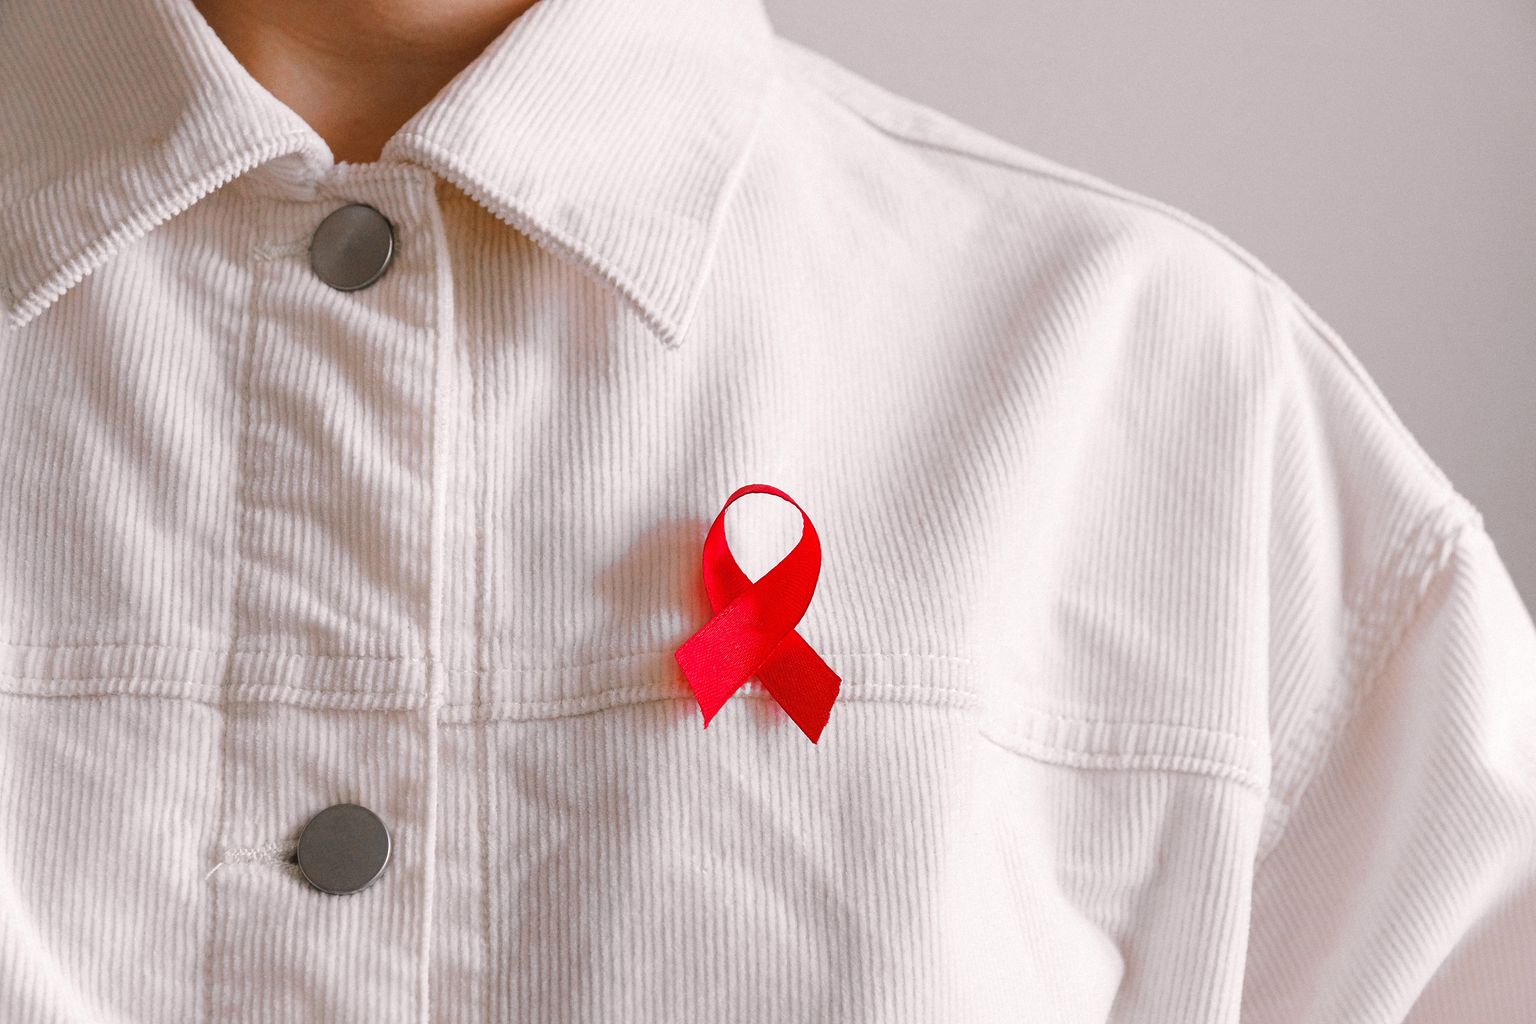 Una persona con camisa blanca lleva un lazo rojo, símbolo de solidaridad con los infectados por el VIH y los enfermos de sida.